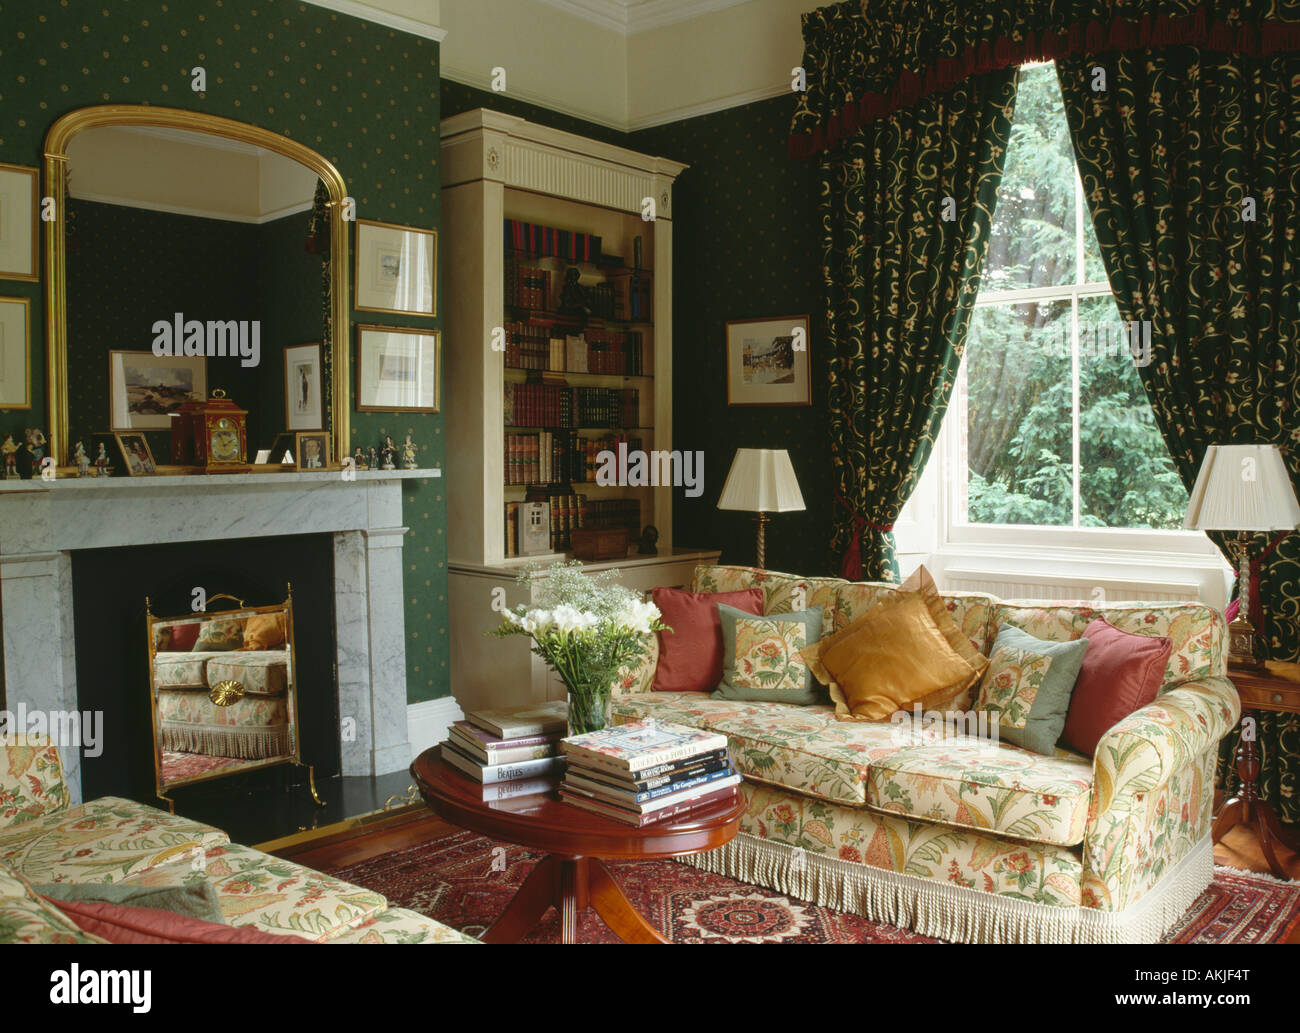 Miroir doré au-dessus de la cheminée de marbre dans années 90 salon papier peint vert rideaux à motifs floral sofas Banque D'Images